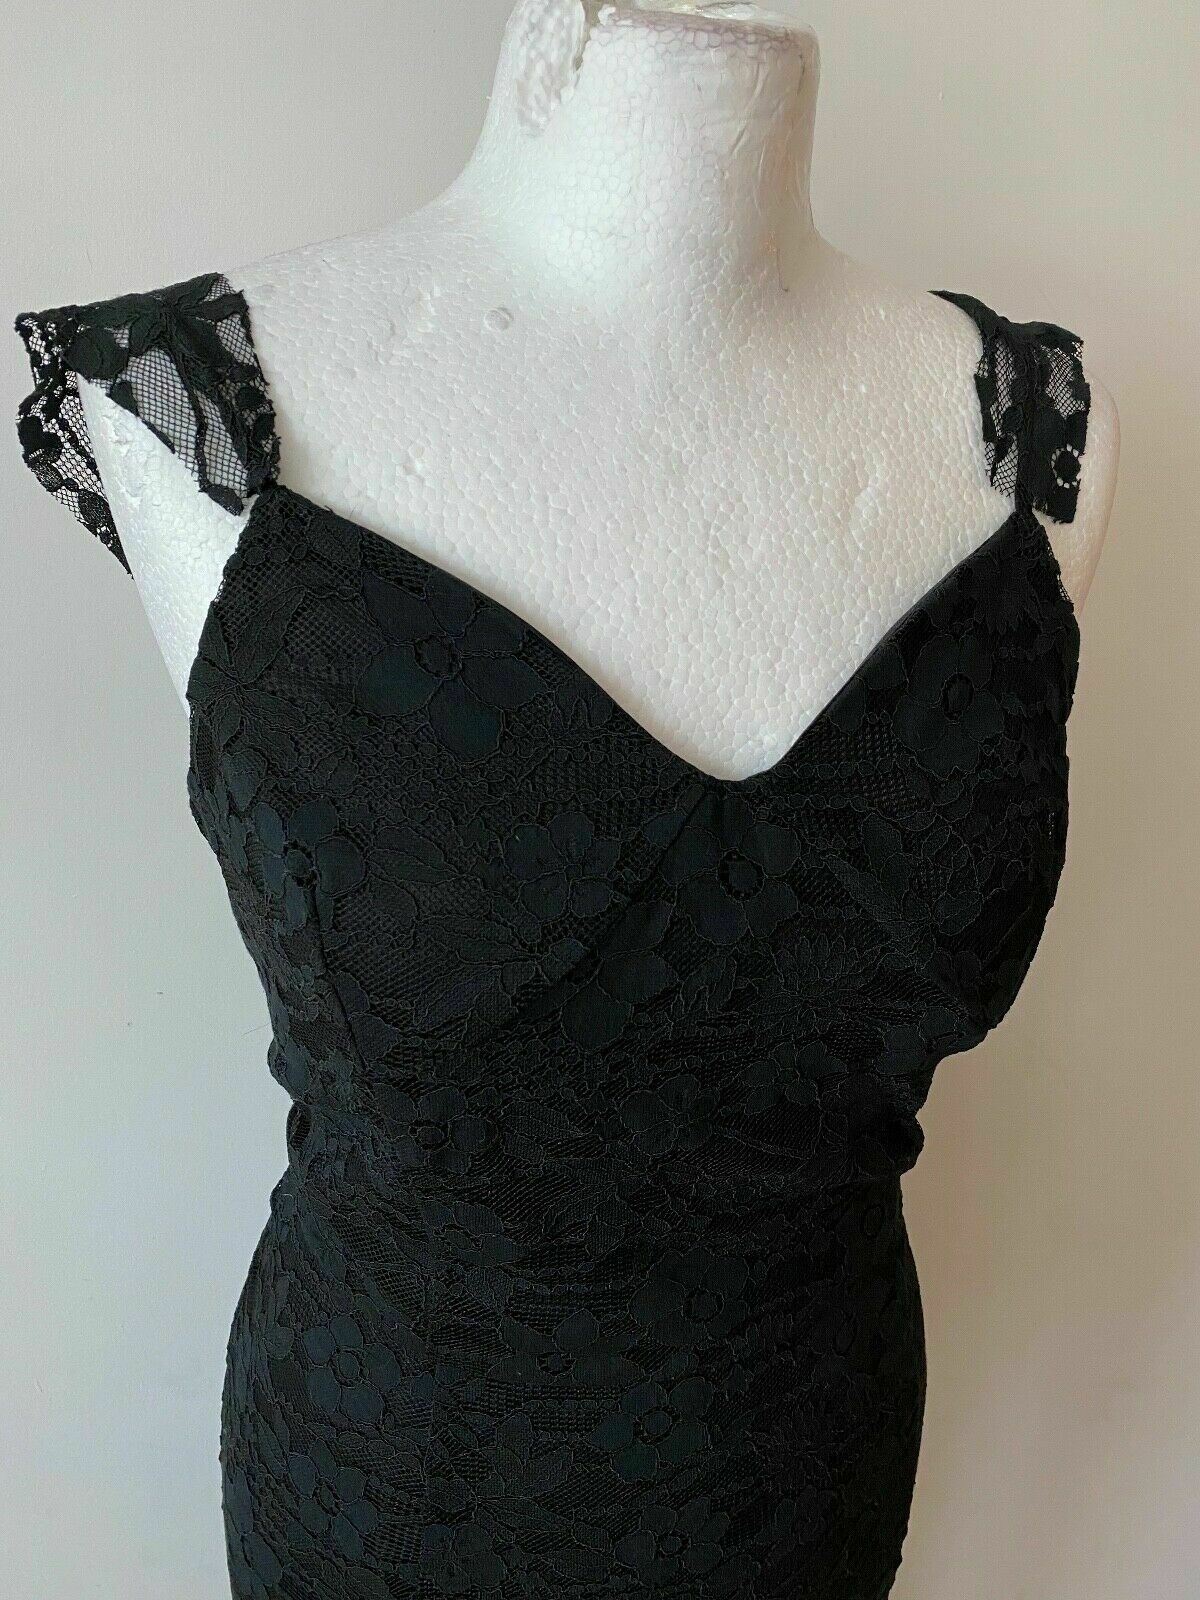 Black Layered Lace Shift Sleeveless Dress Size 16